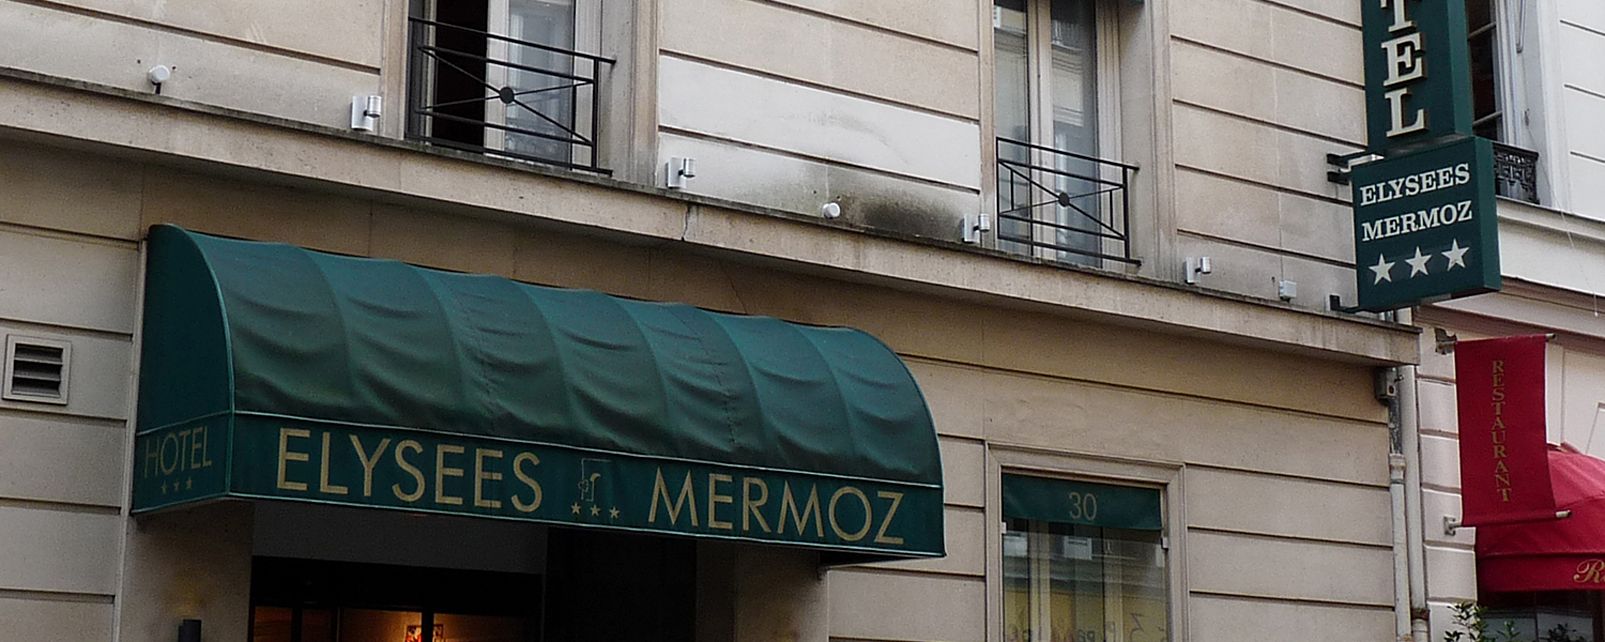 Hotel Elysées Mermoz